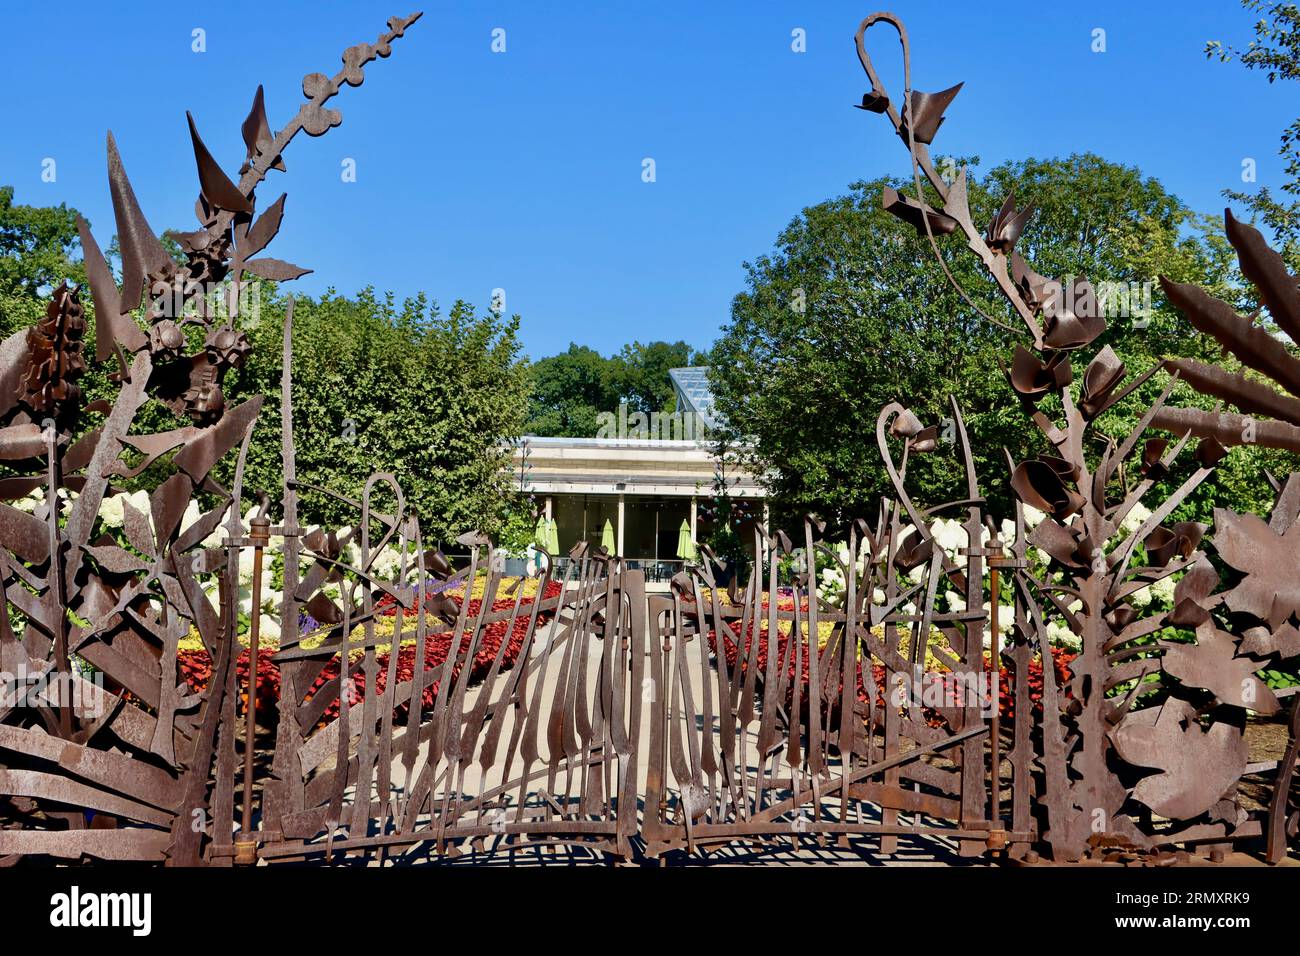 Sculpture de porte kohl par le célèbre sculpteur américain Albert Paley et la terrasse Alleé au Cleveland Botanical Gardens, Cleveland, Ohio Banque D'Images